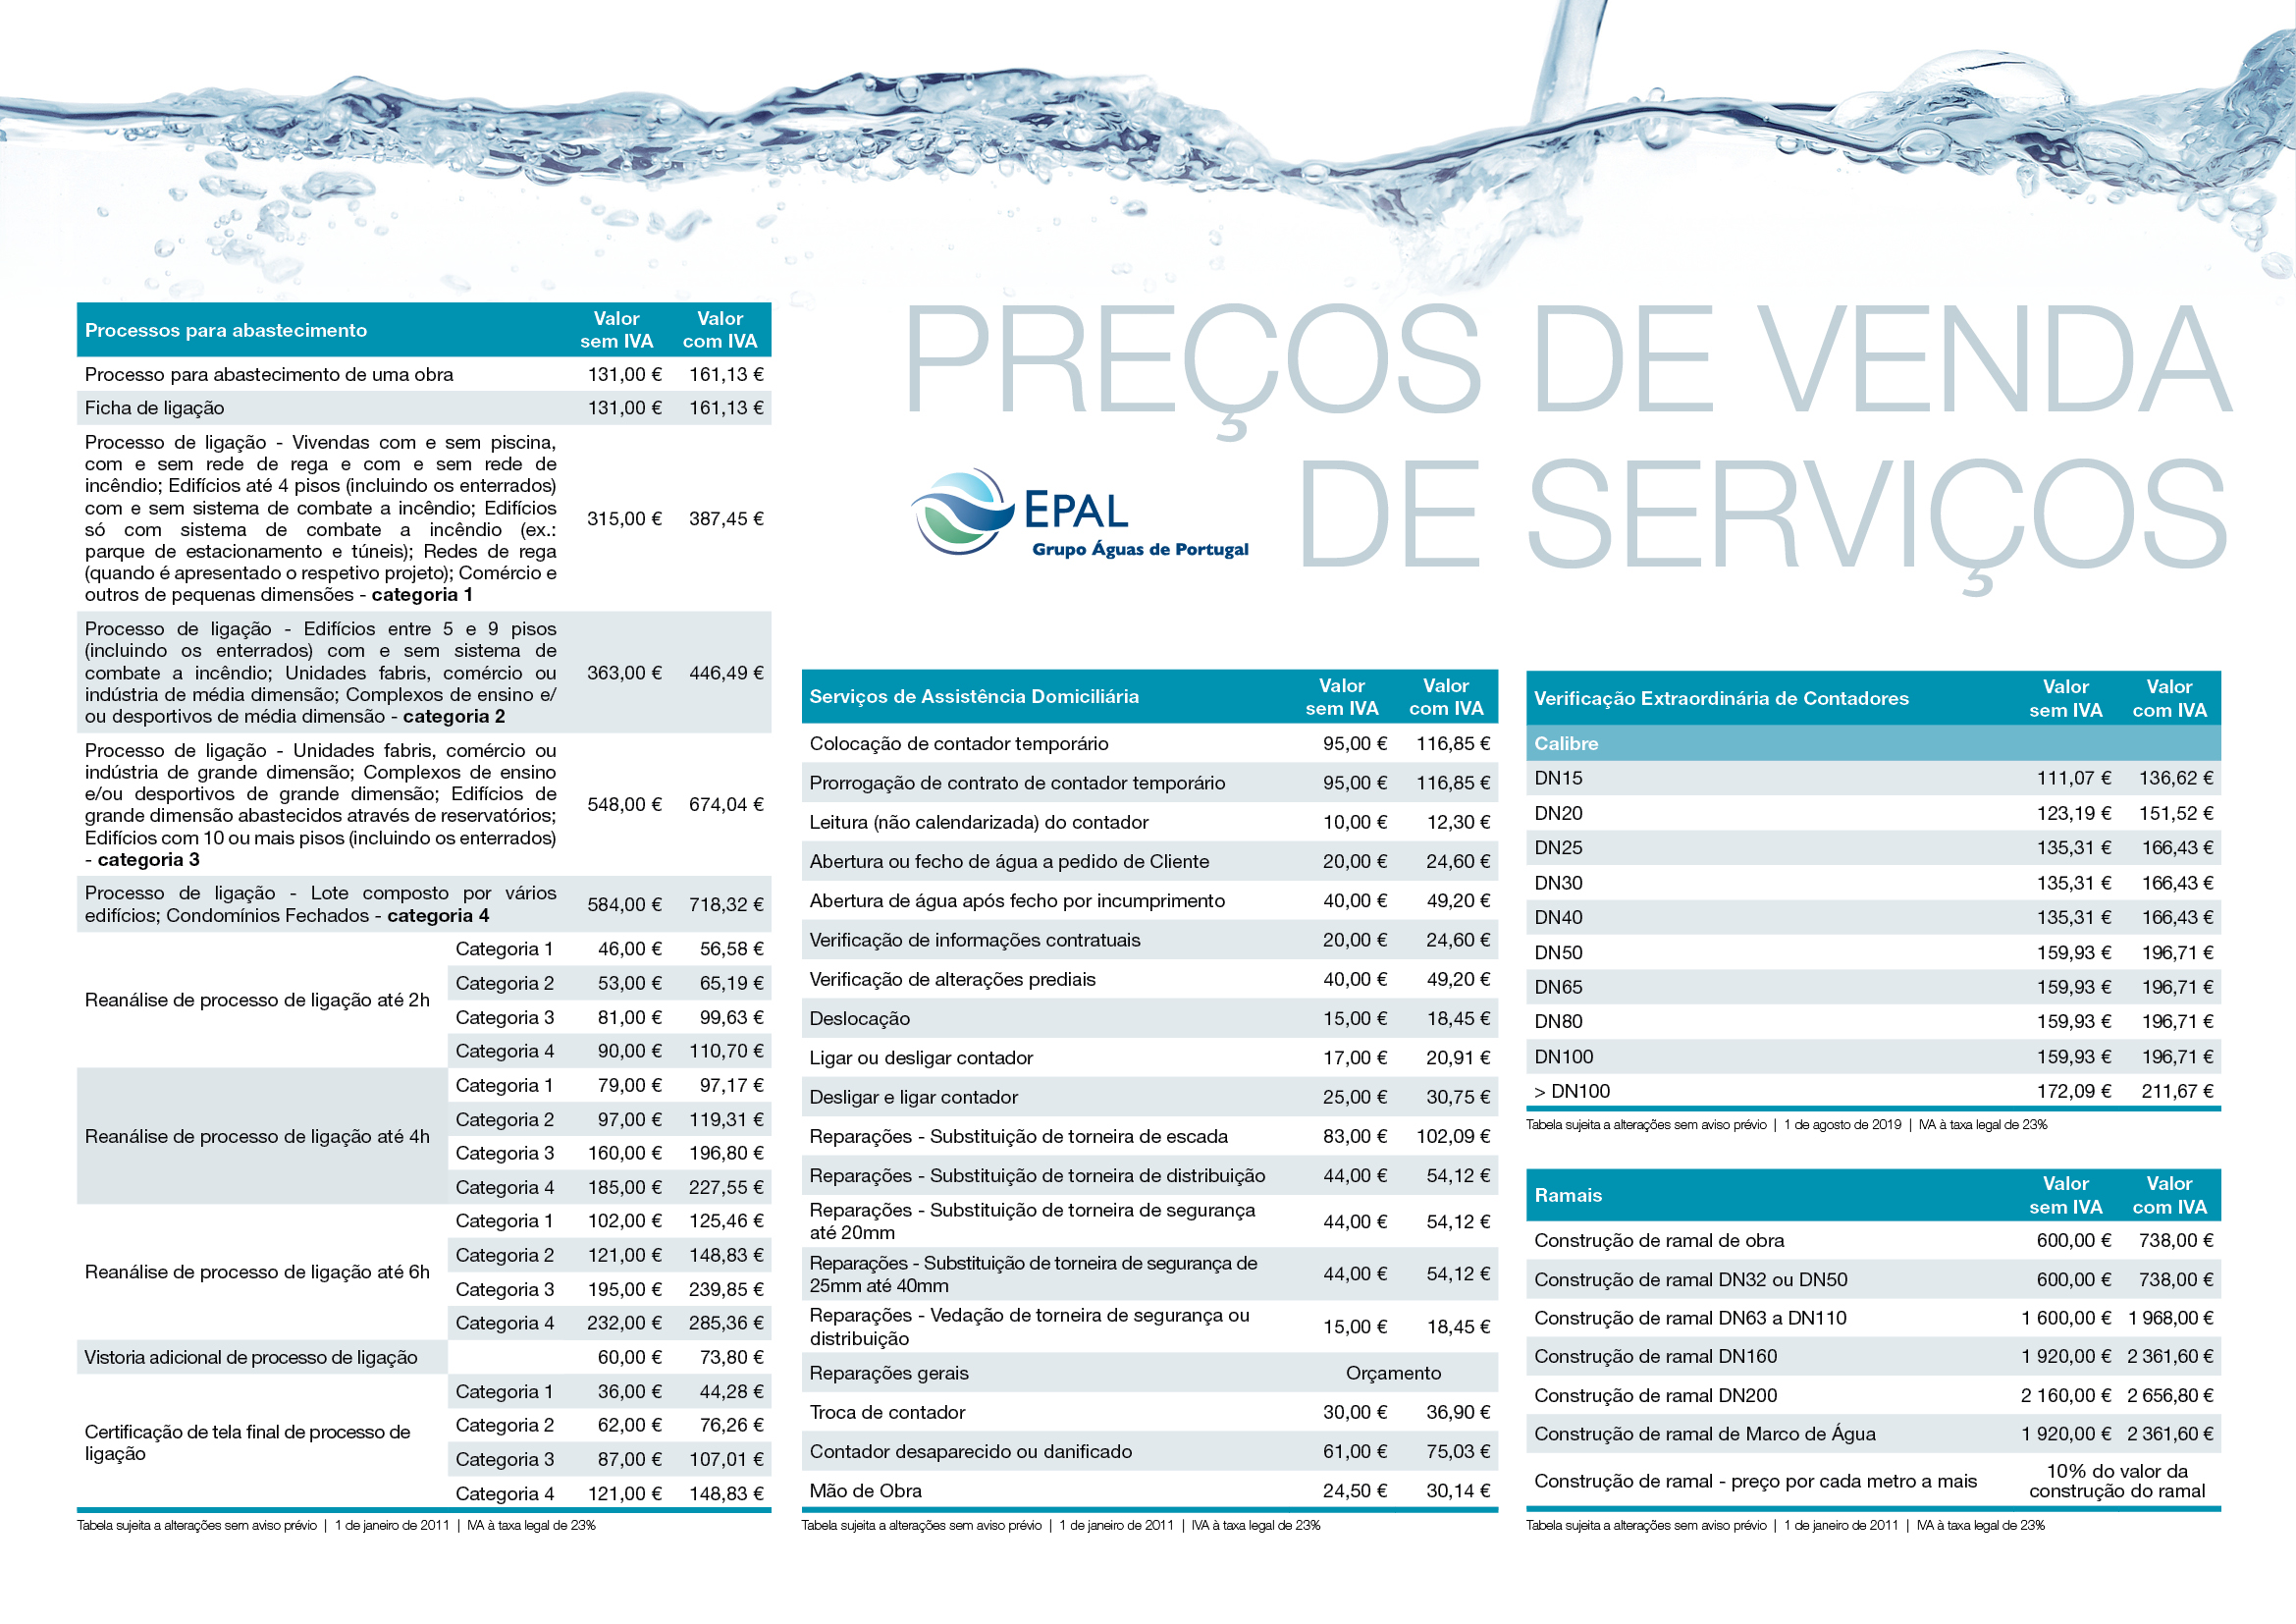 EPAL - Empresa Portuguesa das Águas Livres, SA